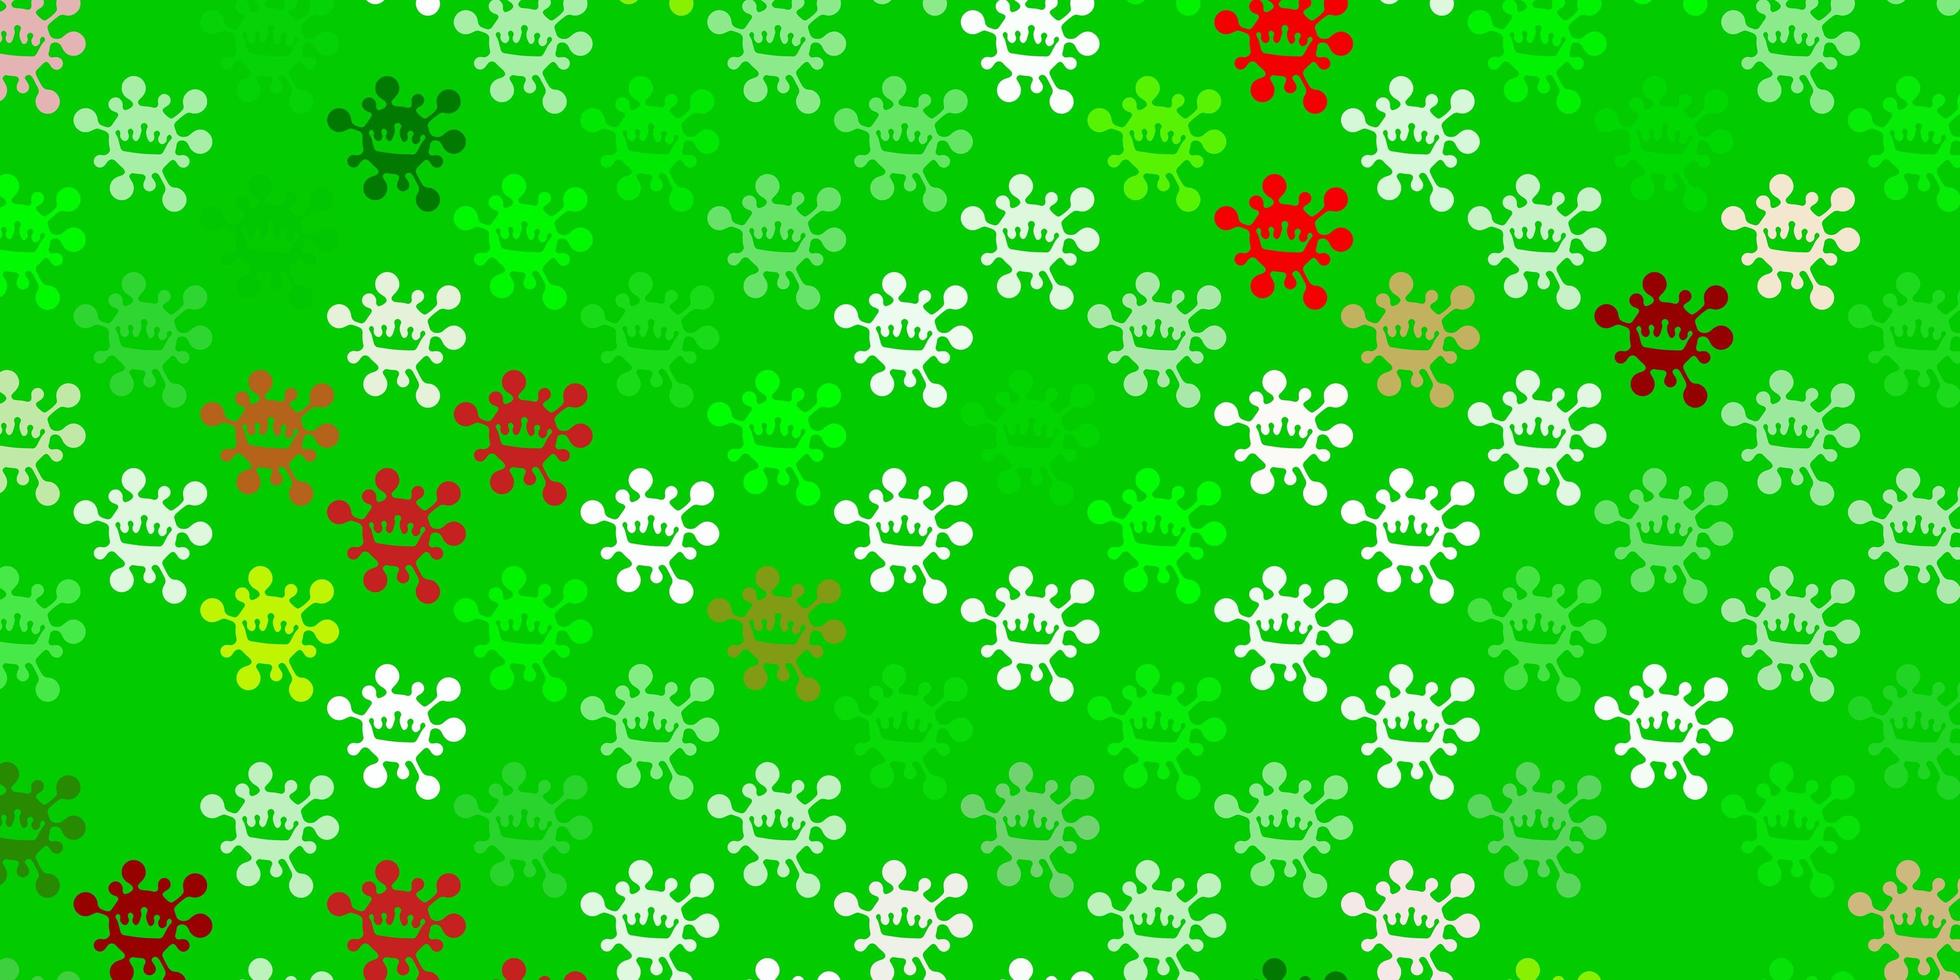 textura de vetor verde claro e vermelho com símbolos de doenças